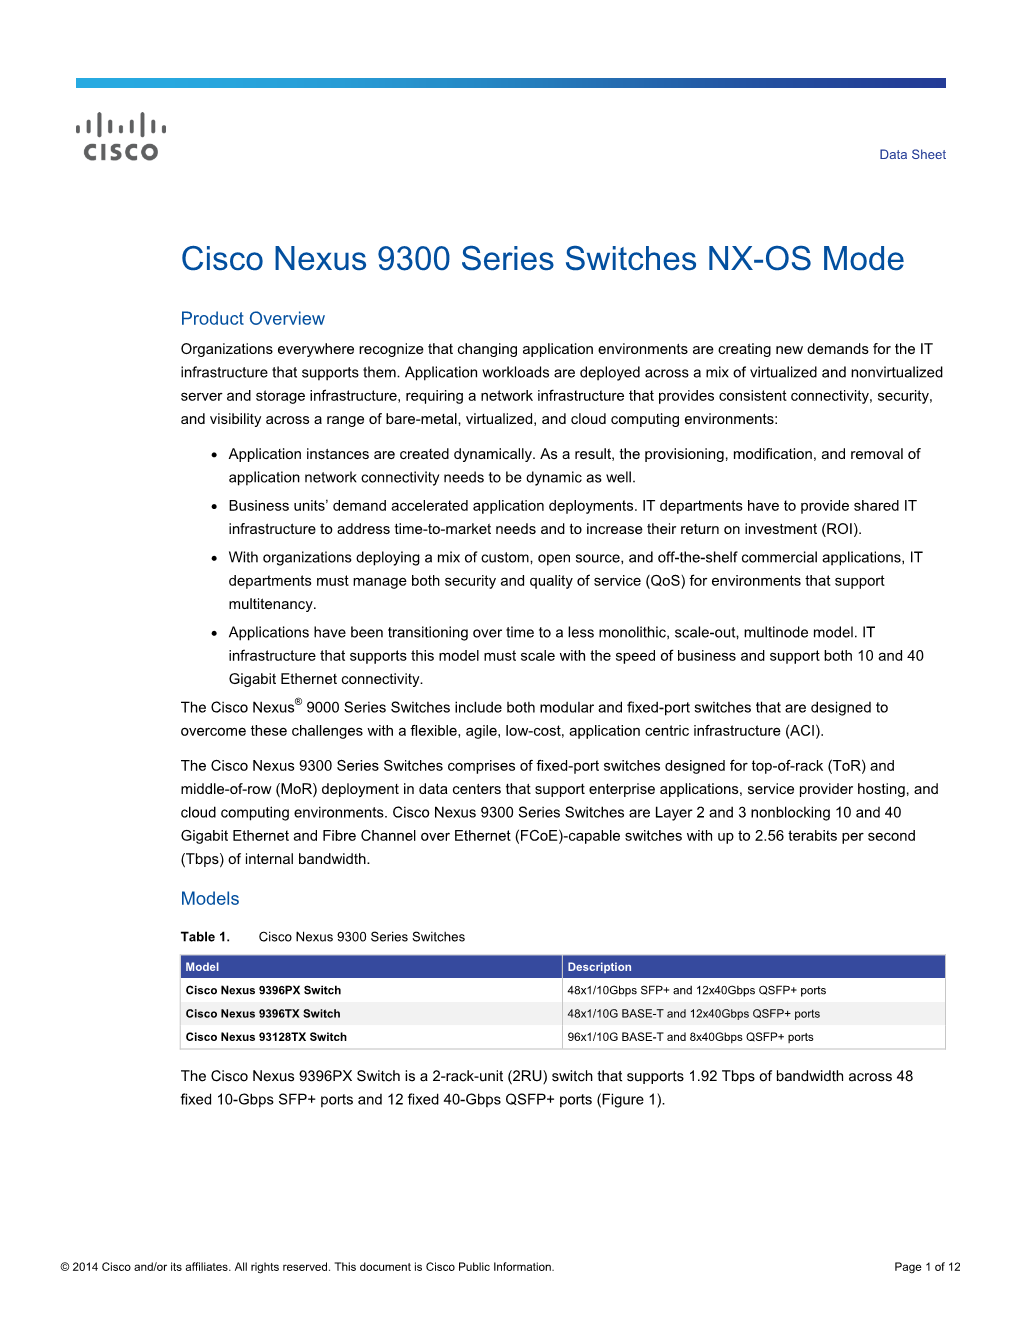 Cisco Nexus 9300 Series Switches NX-OS Mode